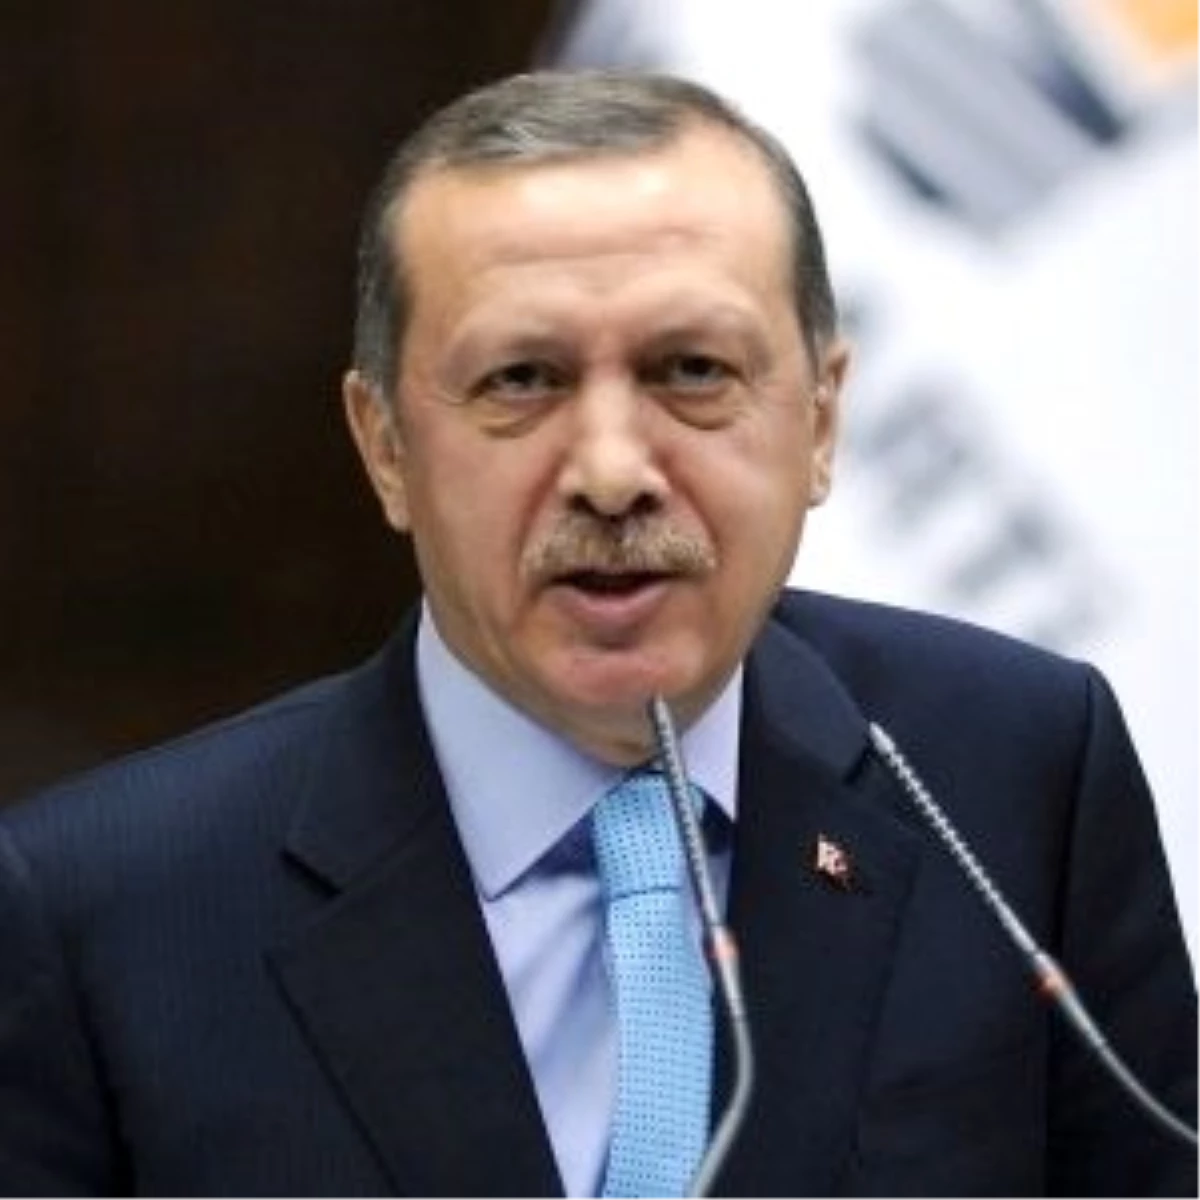 Başbakan Erdoğan(1): "Chp Darbelerin Küvözünde Üremiştir"